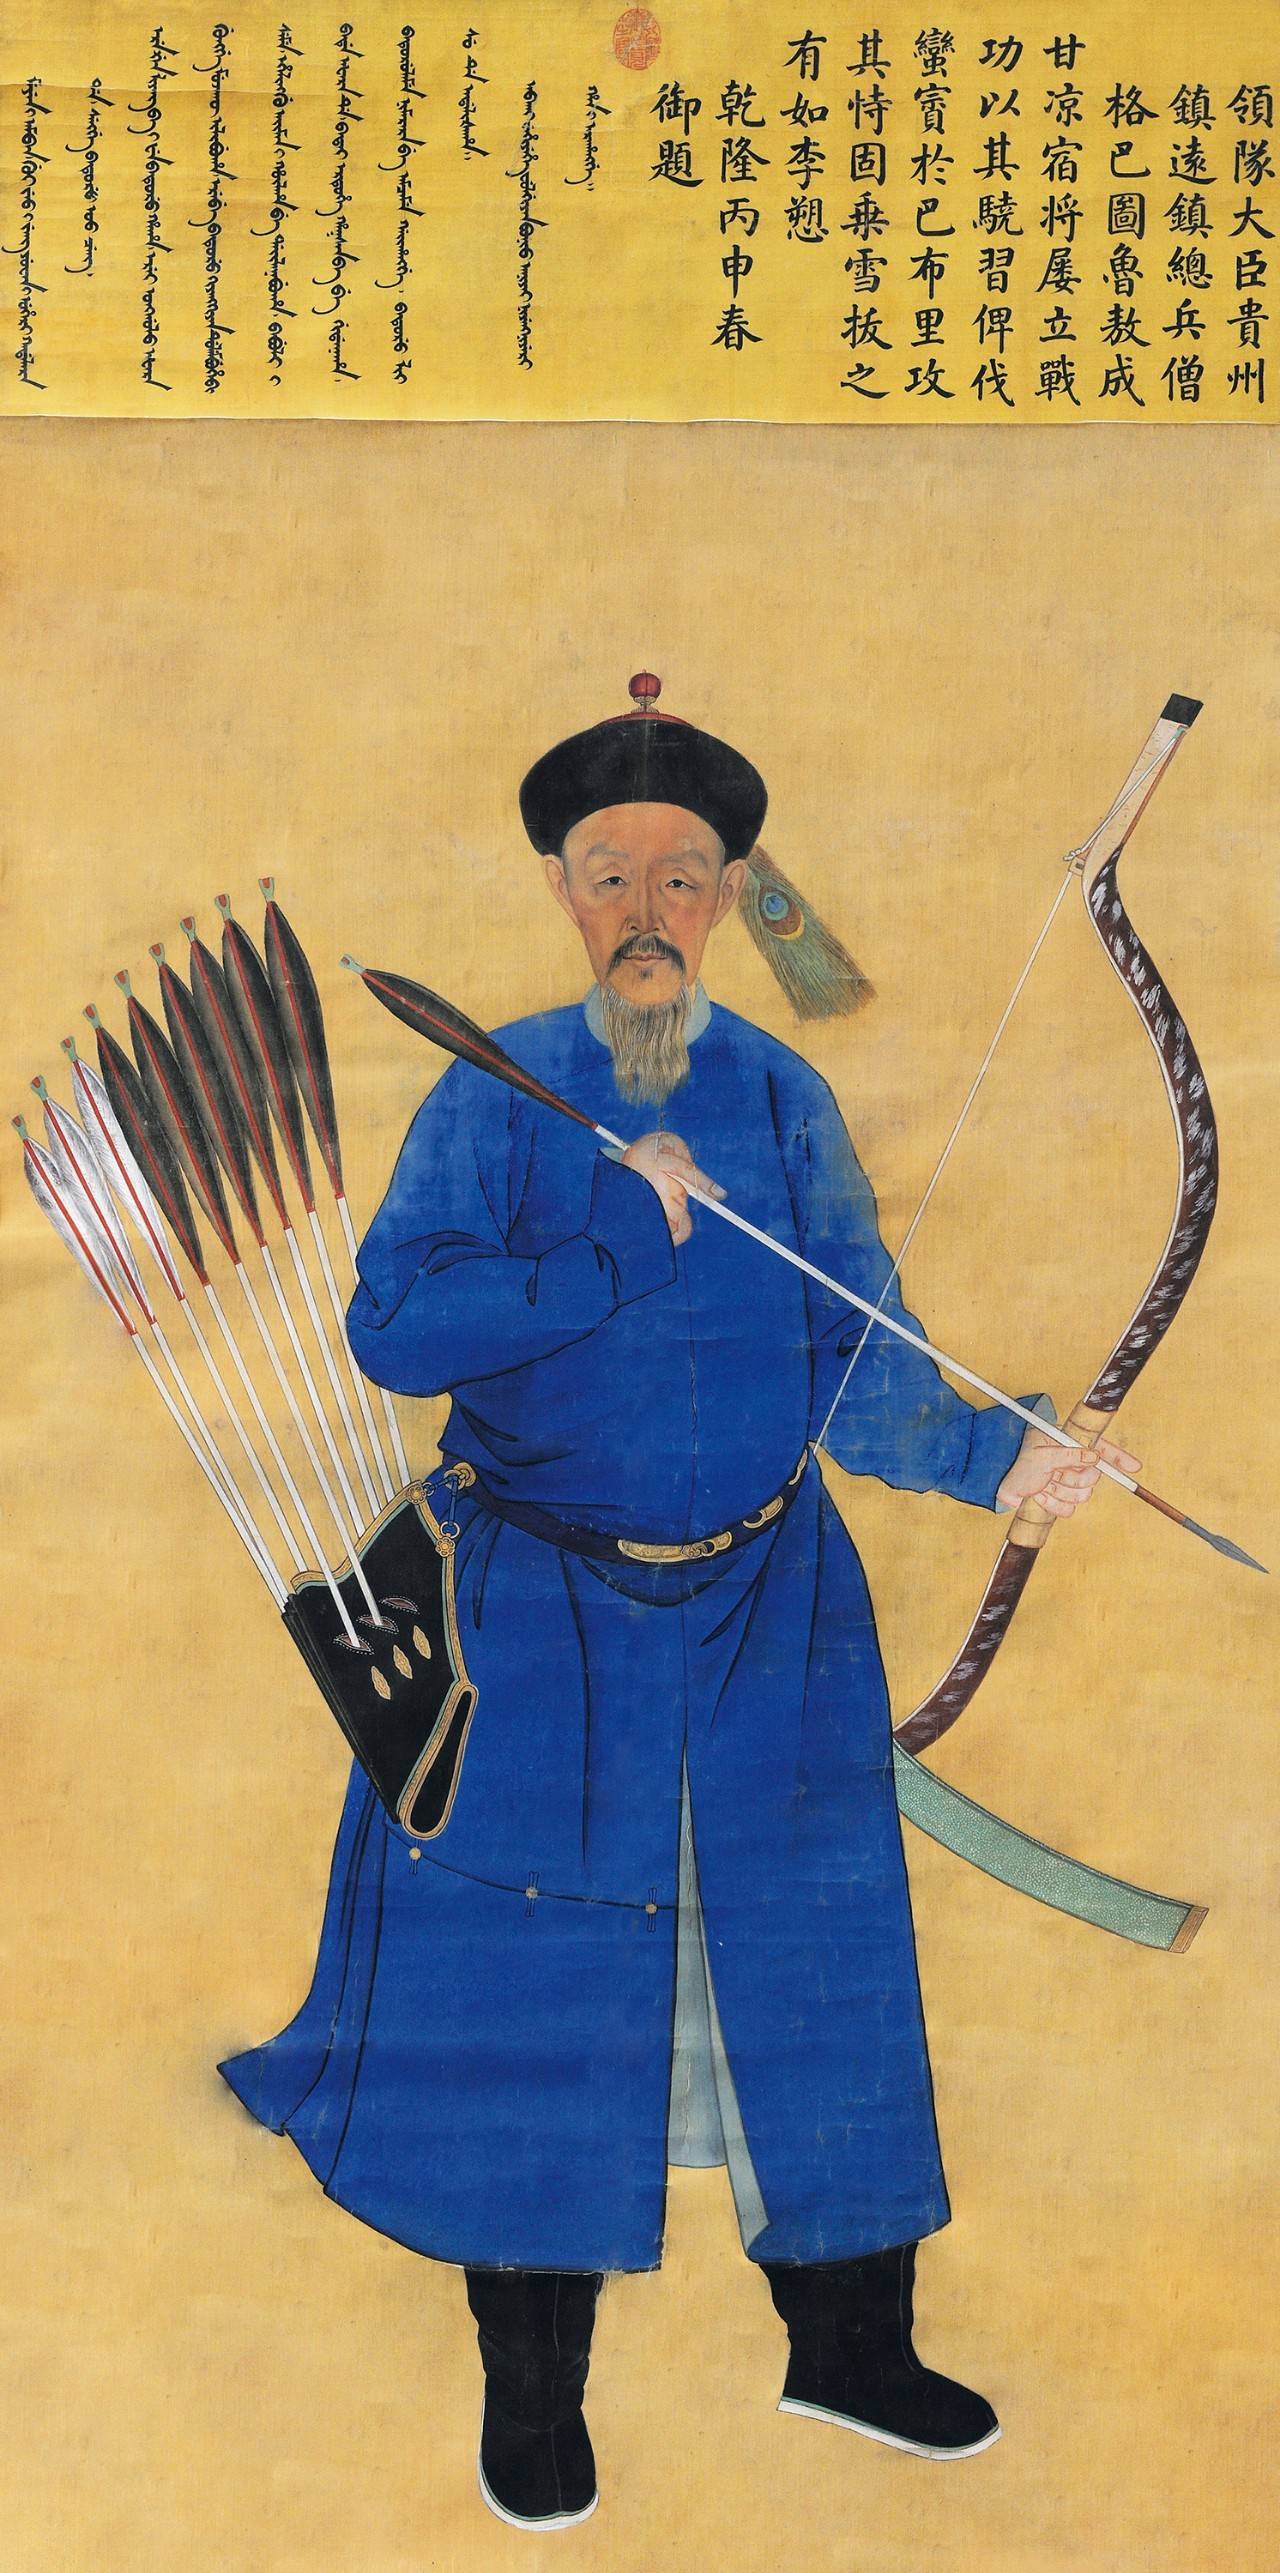 清代宫廷画家绘   领队大臣贵州镇远镇总兵僧格巴图鲁敖成像